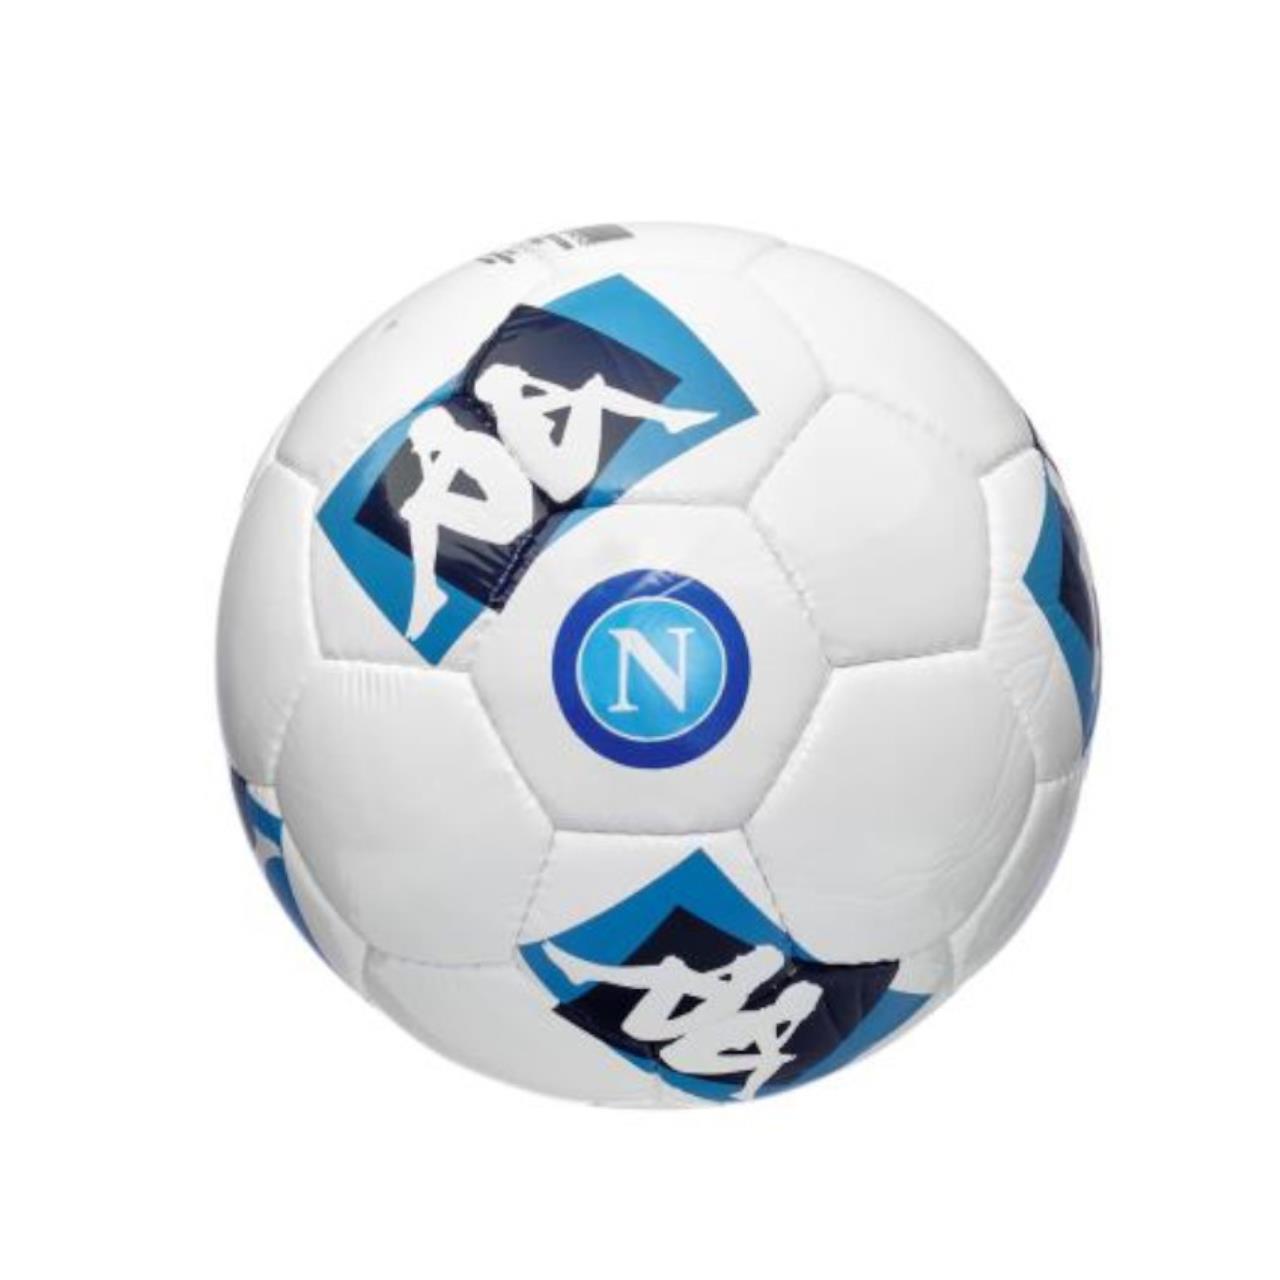 PALLONE CALCIO NAPOLI STAGIONE 2020-2021 - Palloni Calcio - Calcio -  Prodotti - Olly Sport s.a.s.